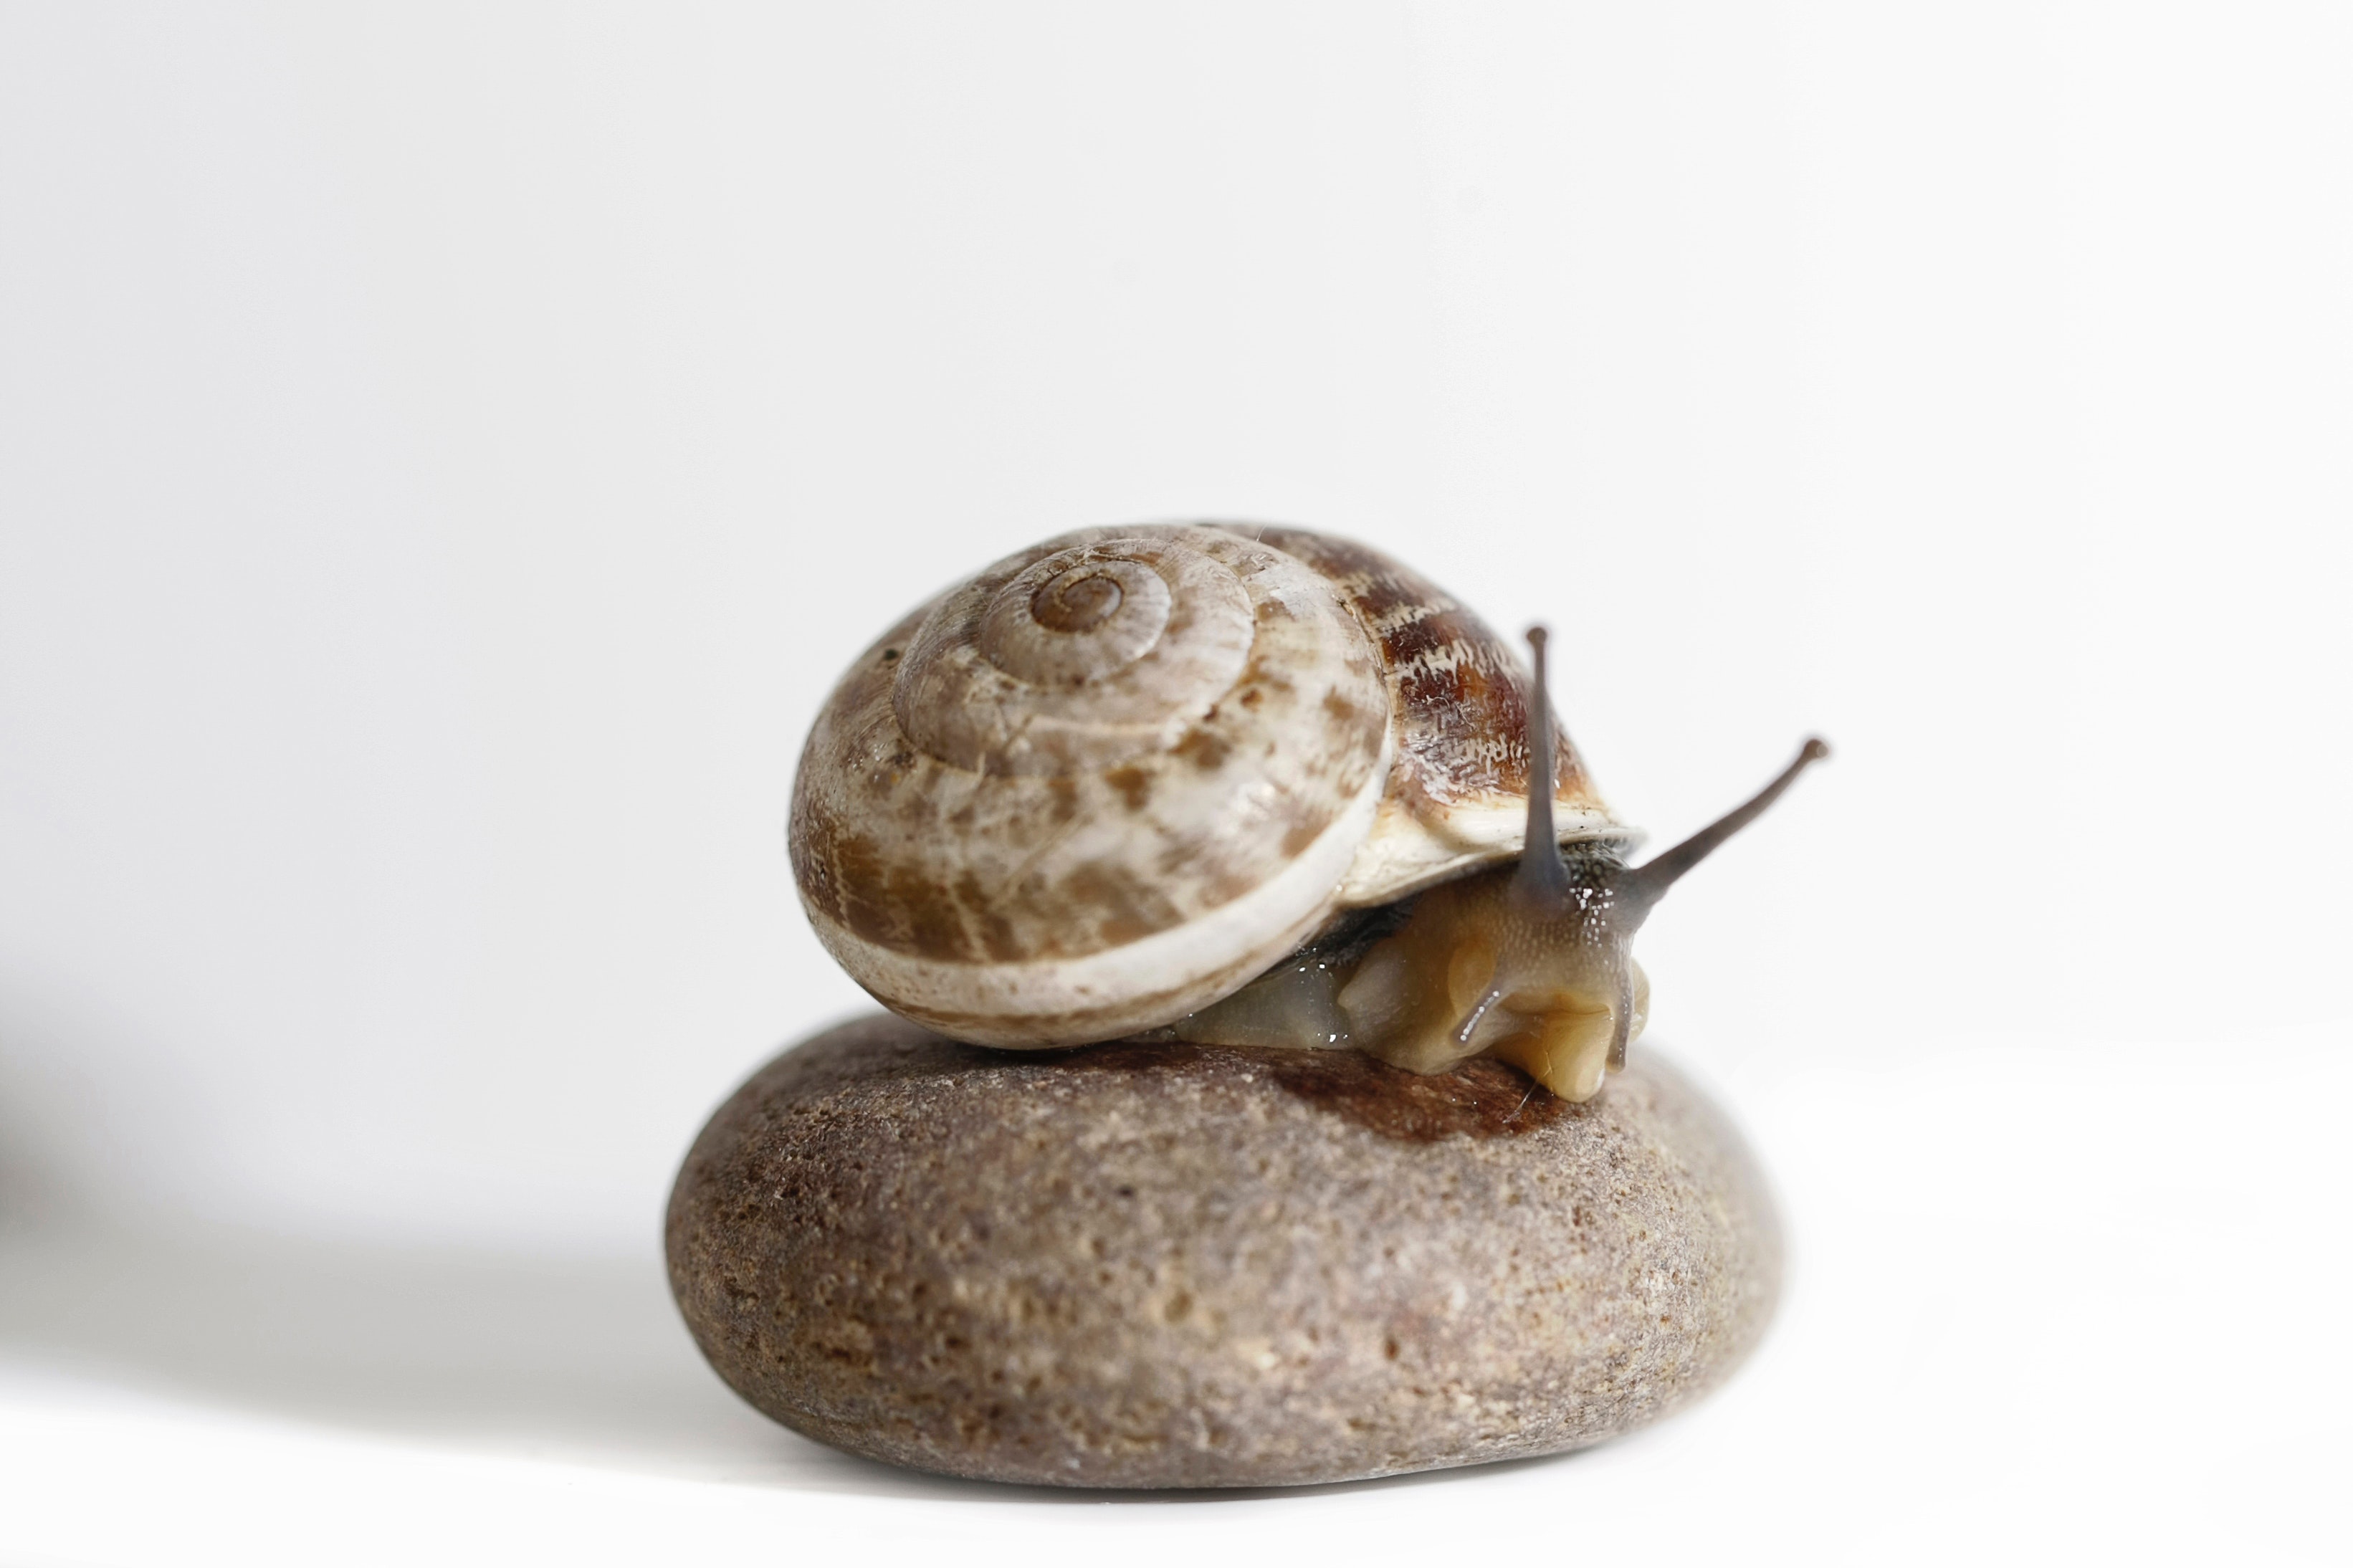 Brow snail on stone photo